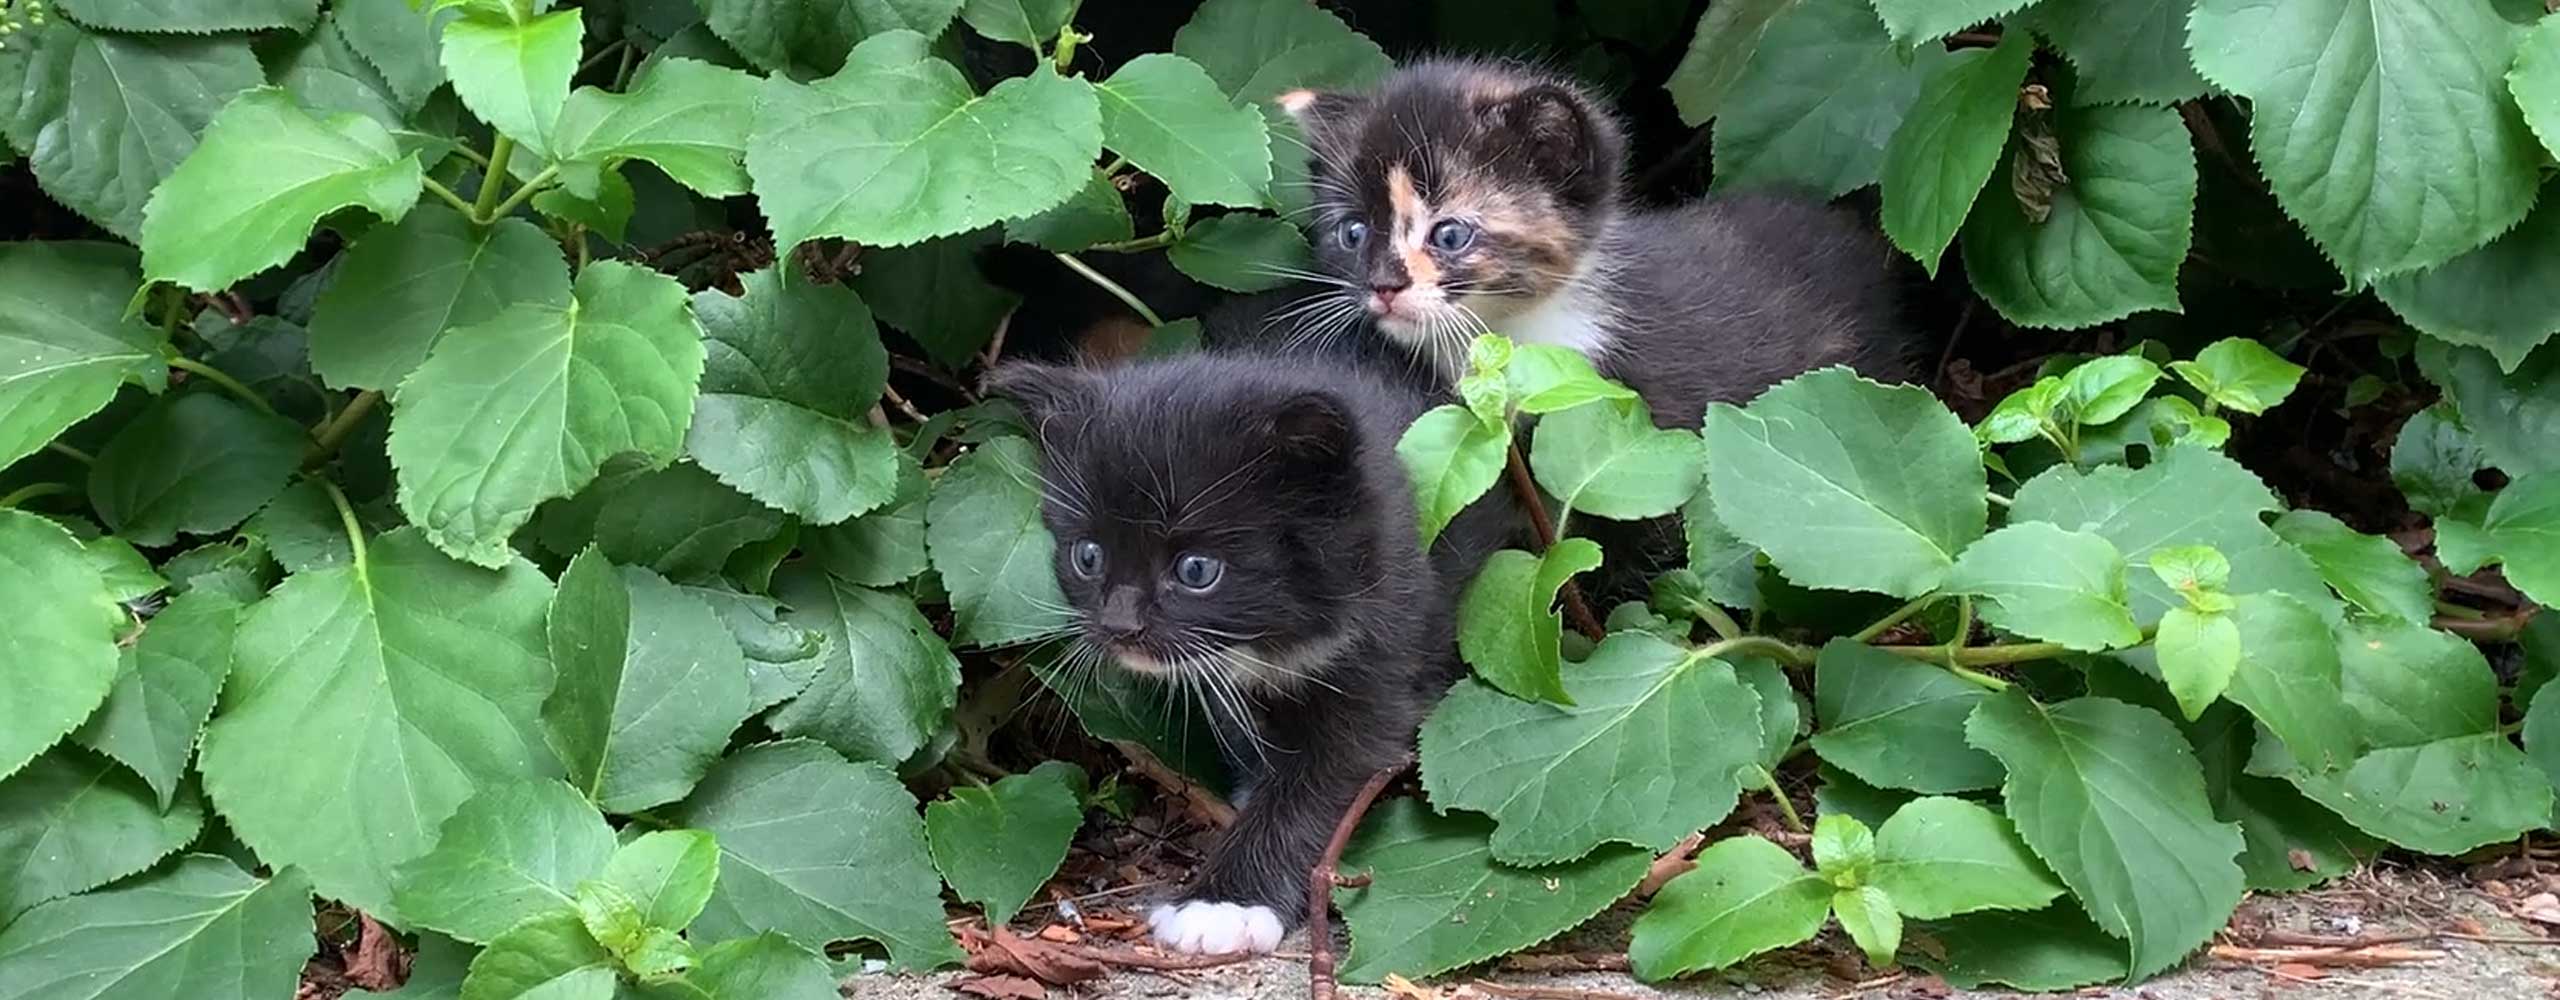 Anne found a litter of kittens in her garden